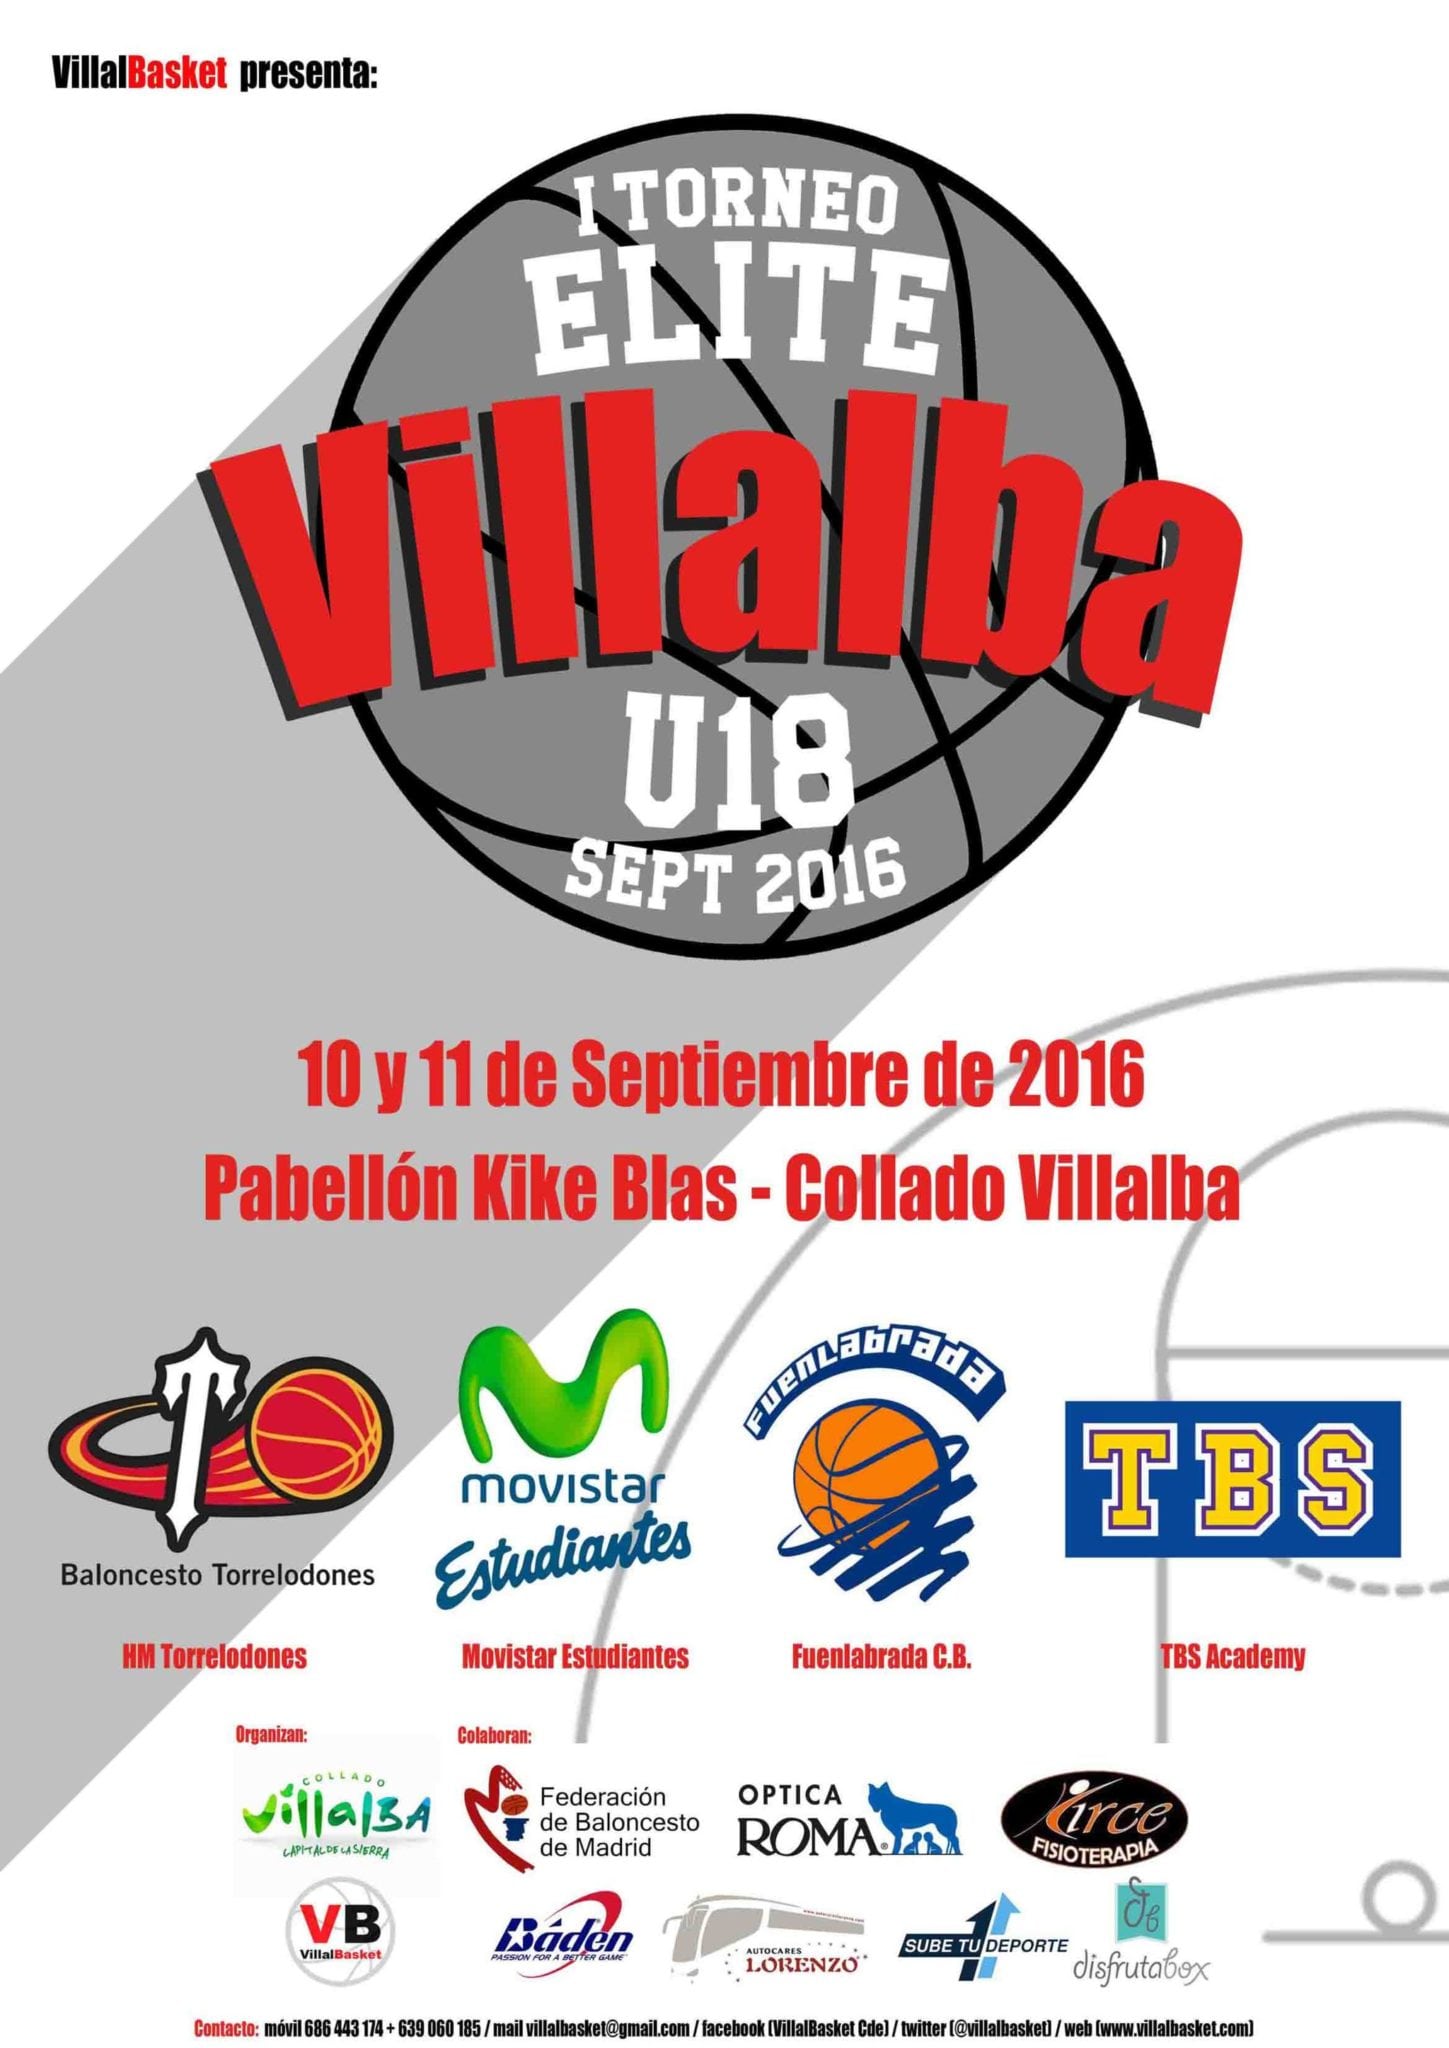 Movistar Estudiantes en el estreno del Torneo Élite Villalba U18